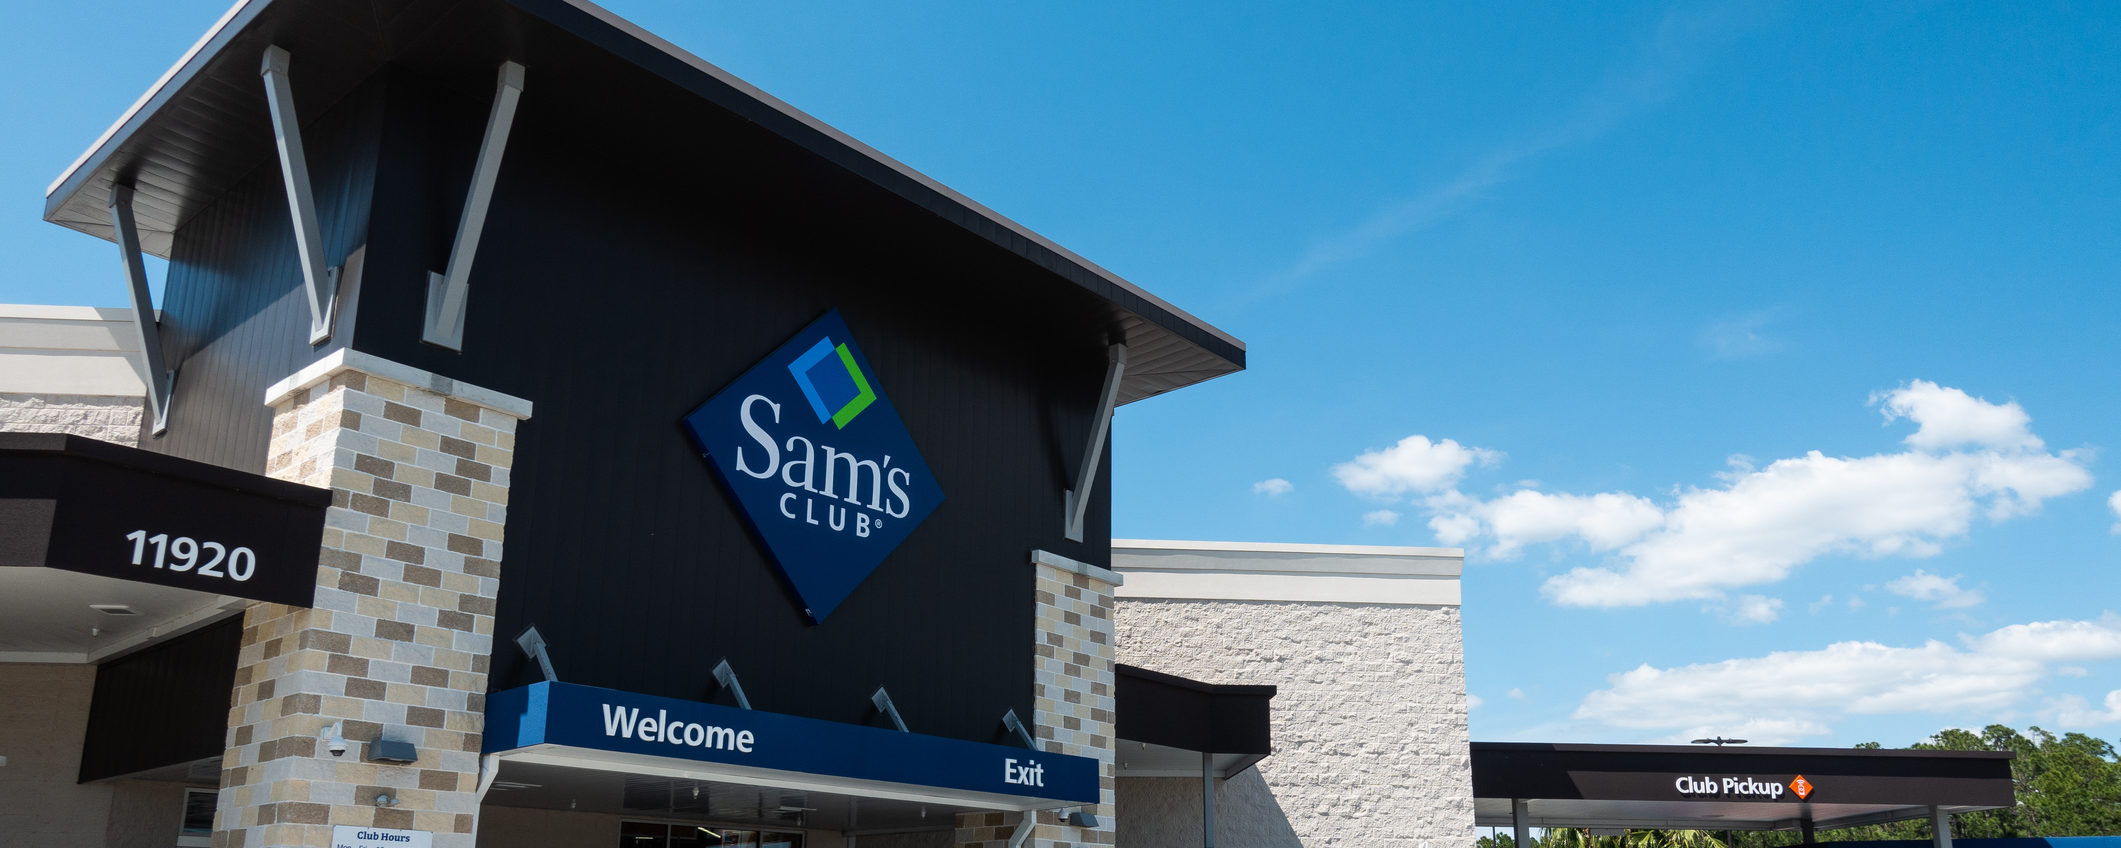 The best deals of the Sam's Club Weekend Doorbusters Sale Clark Deals